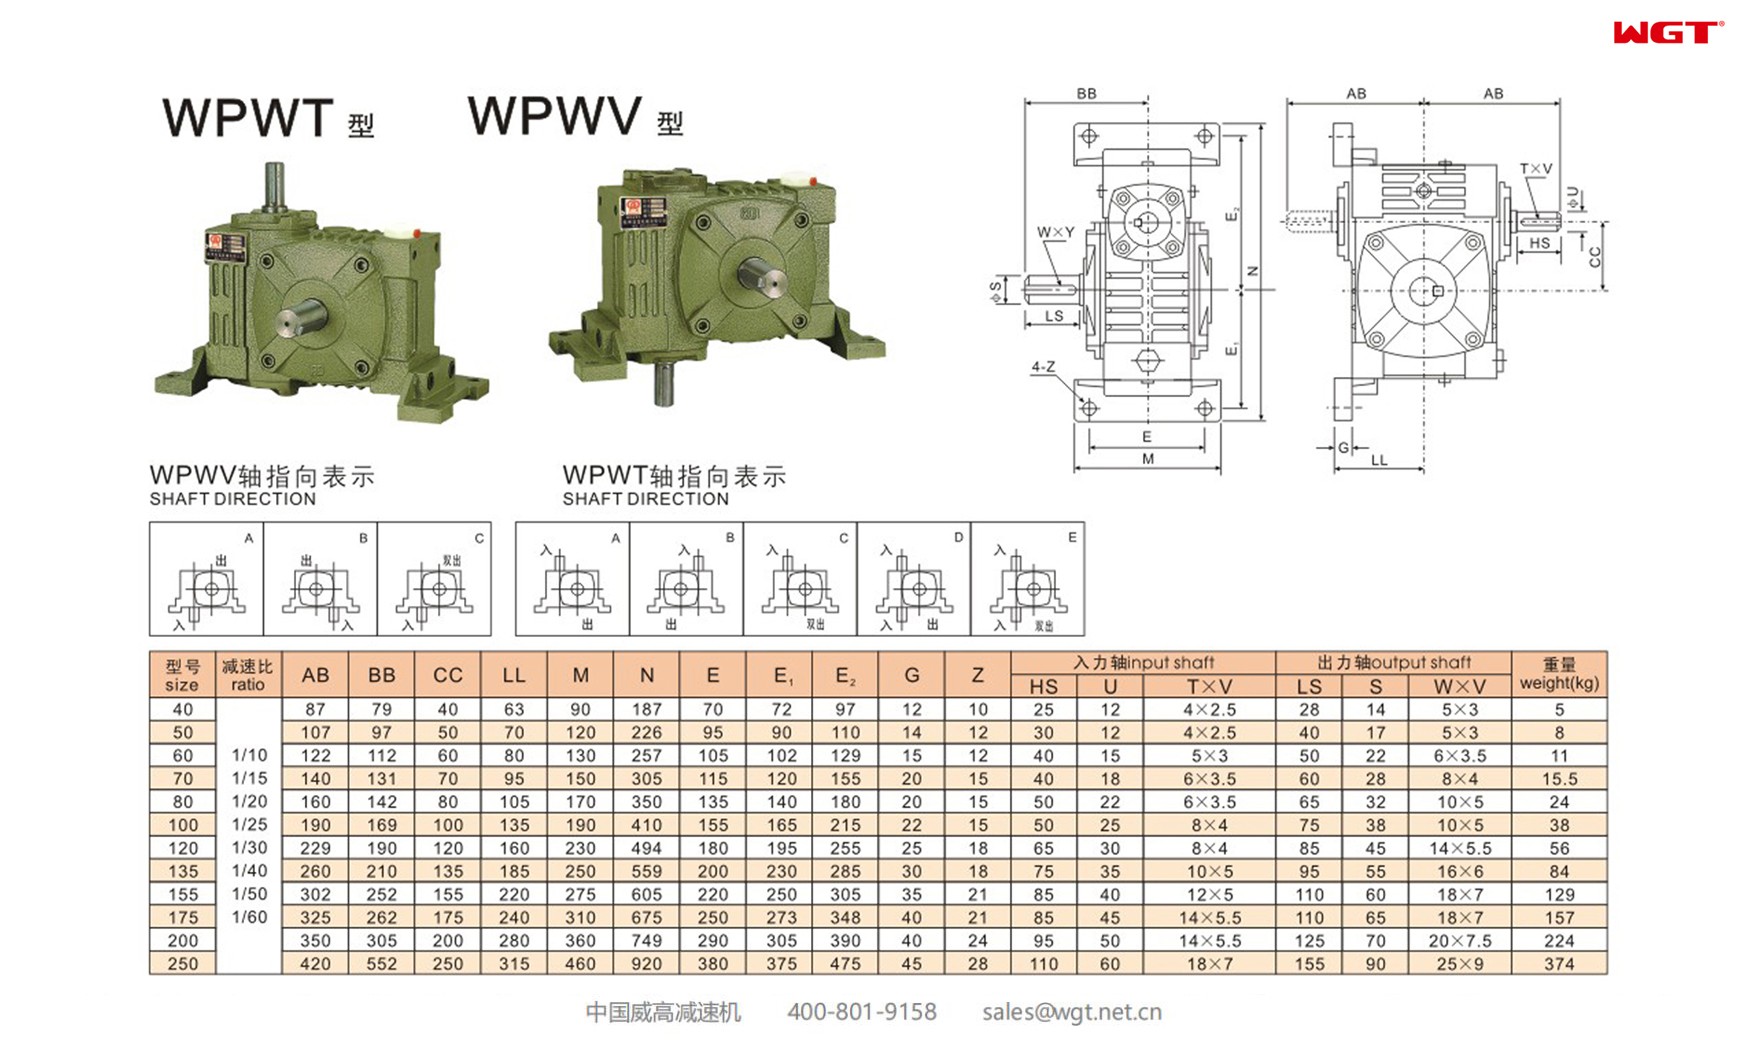 WPWT70 worm gear reducer universal speed reducer 